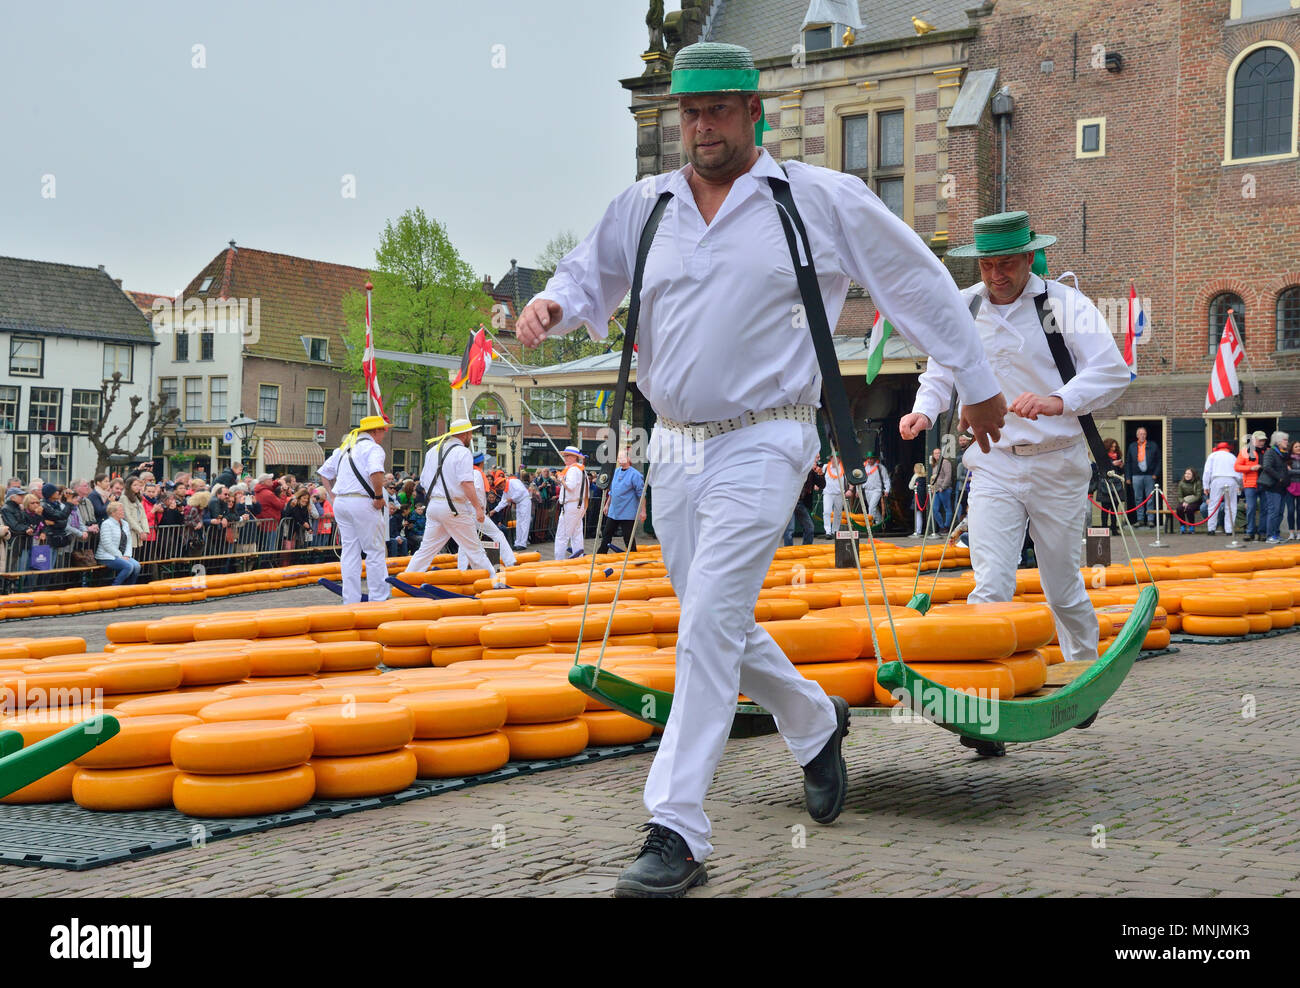 Il divertente mercato del formaggio avviene sul Waagplein in Alkmaar, Holland ogni settimana durante la primavera e l'estate. Foto Stock